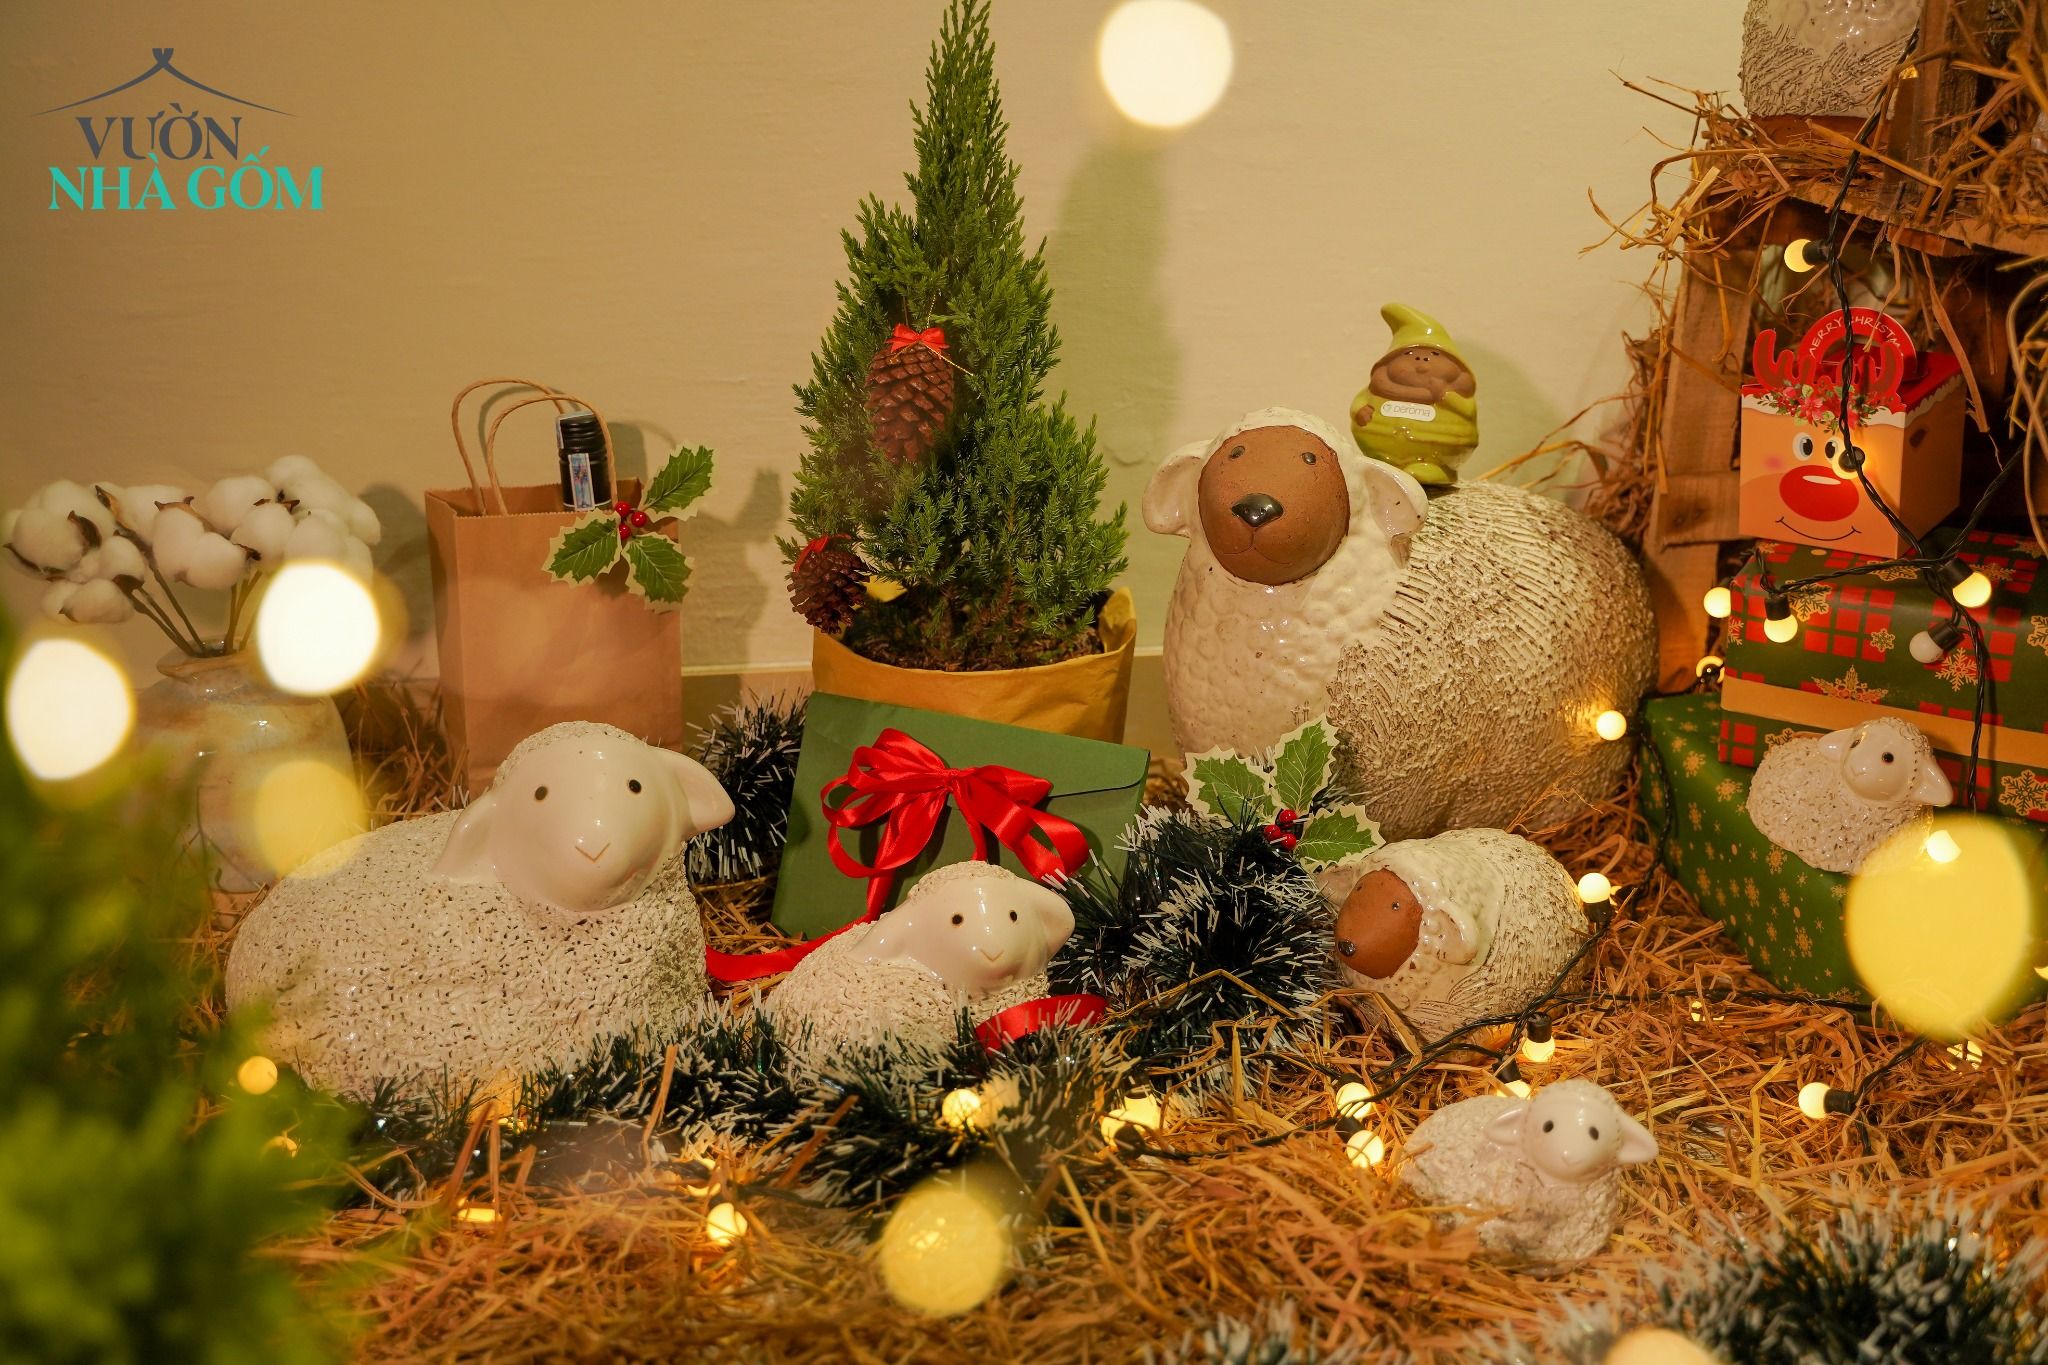  Cừu nằm trắng mini, gốm trang trí Noel và sân vườn, D11xC9 (cm) 